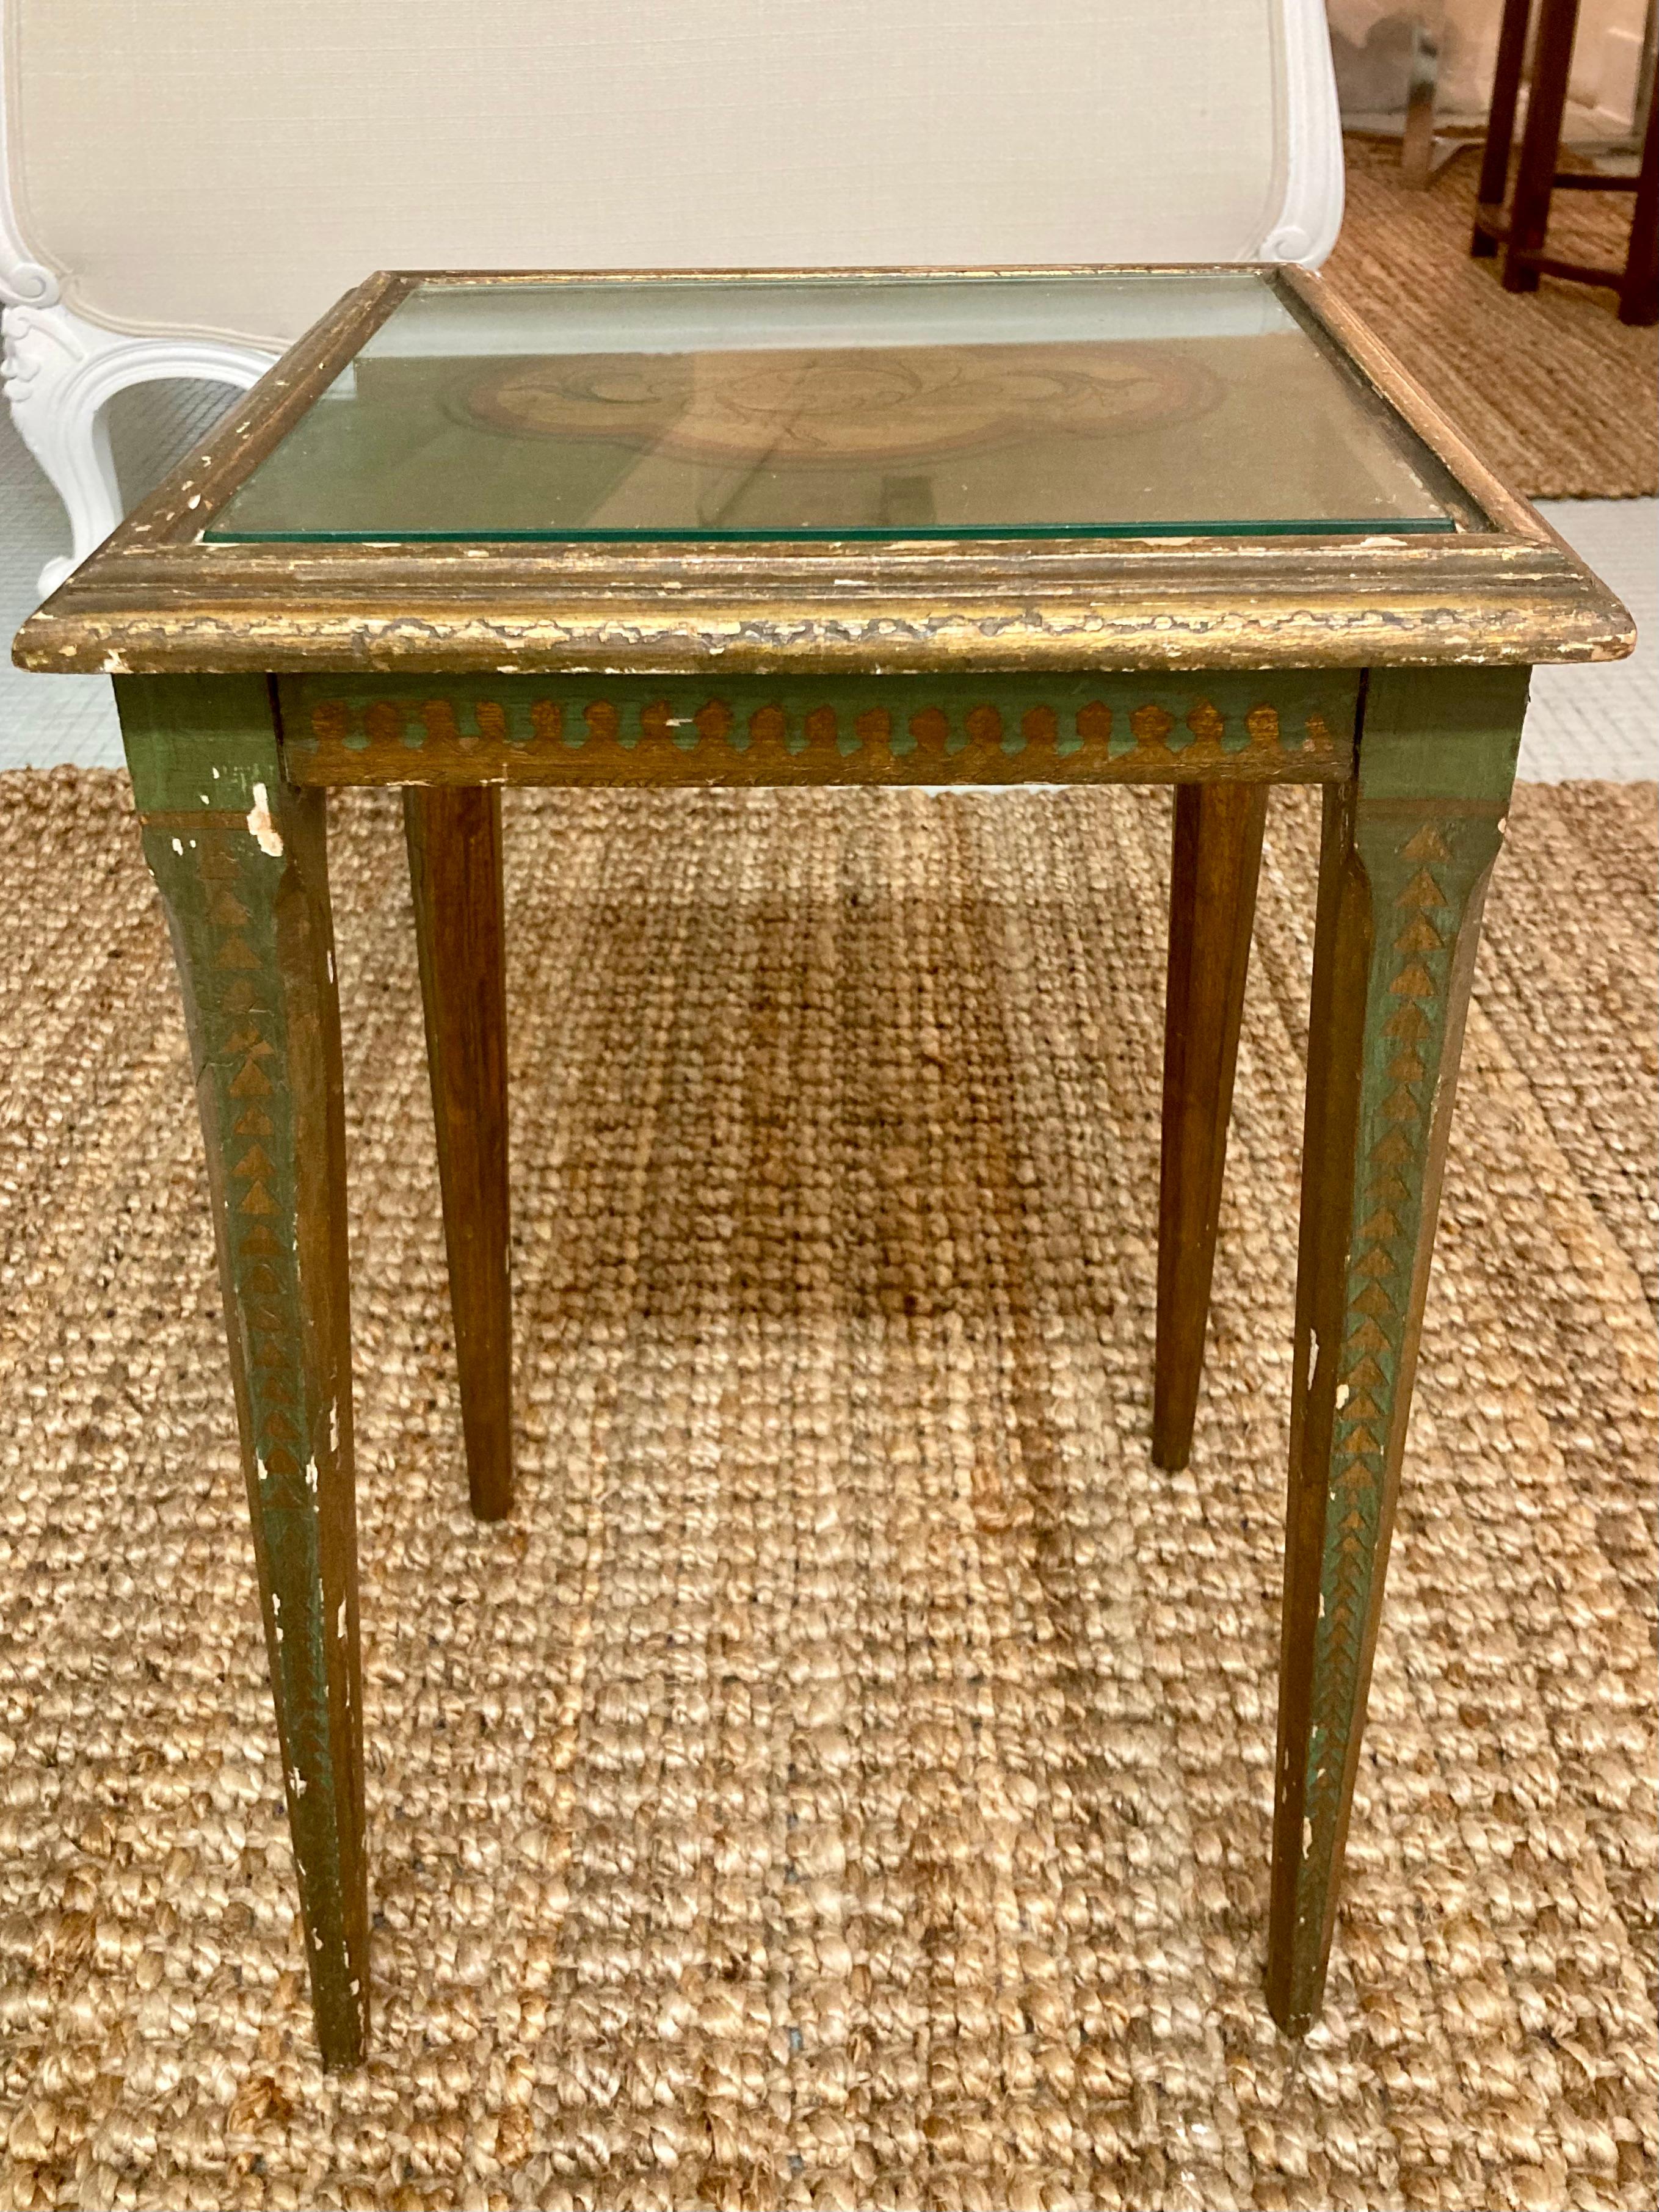 Magnifique table à cocktail vénitienne du XVIIIe siècle. Peint à la main sur la plupart des surfaces en vert et en or. Ajoutez un style italien classique à votre maison.